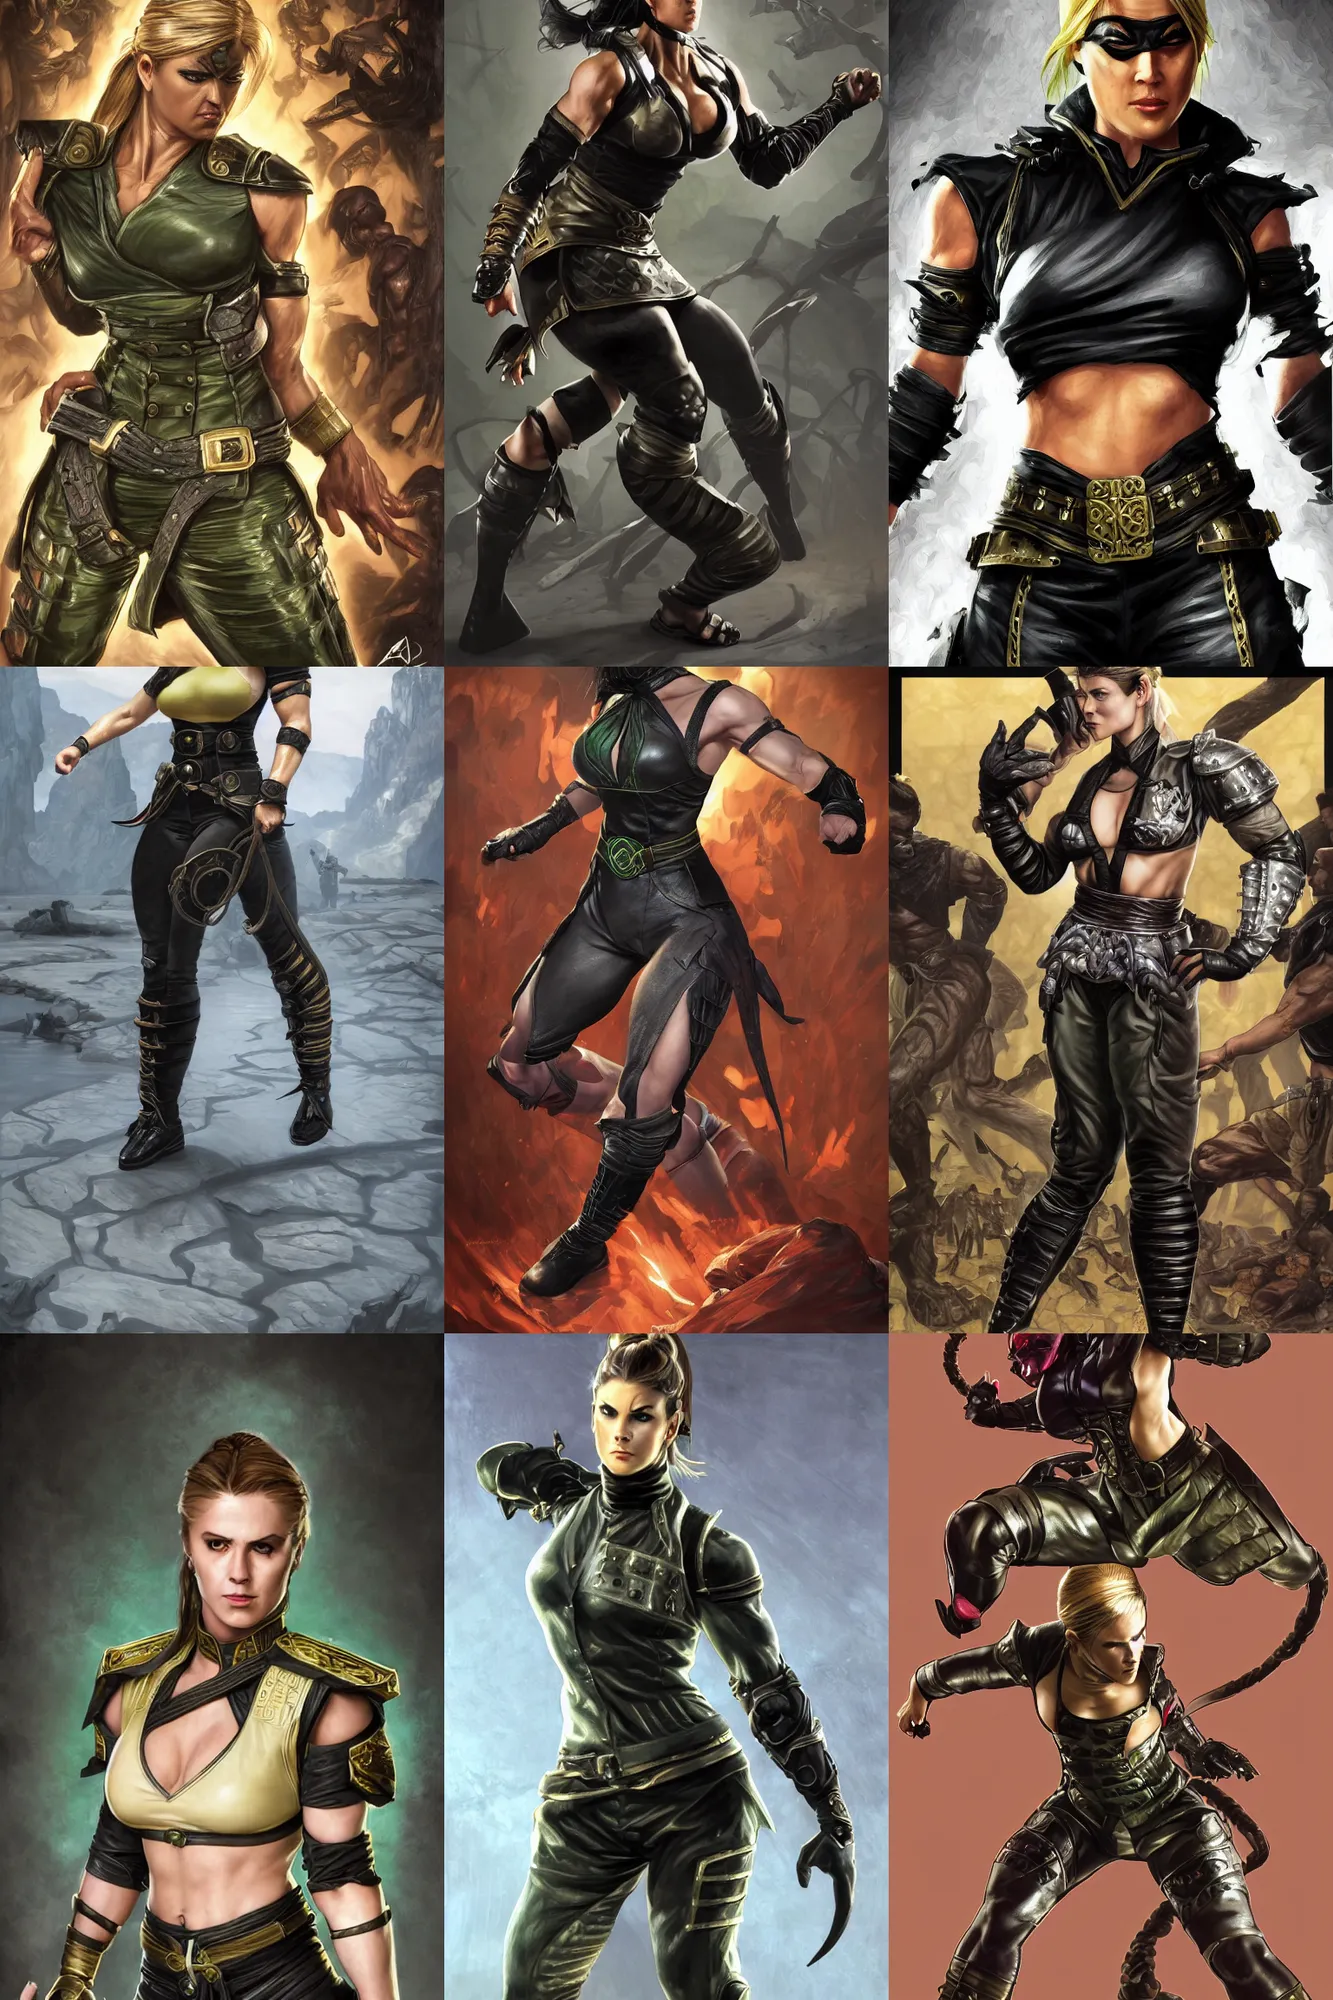 ArtStation - Mortal Kombat 3 Poster